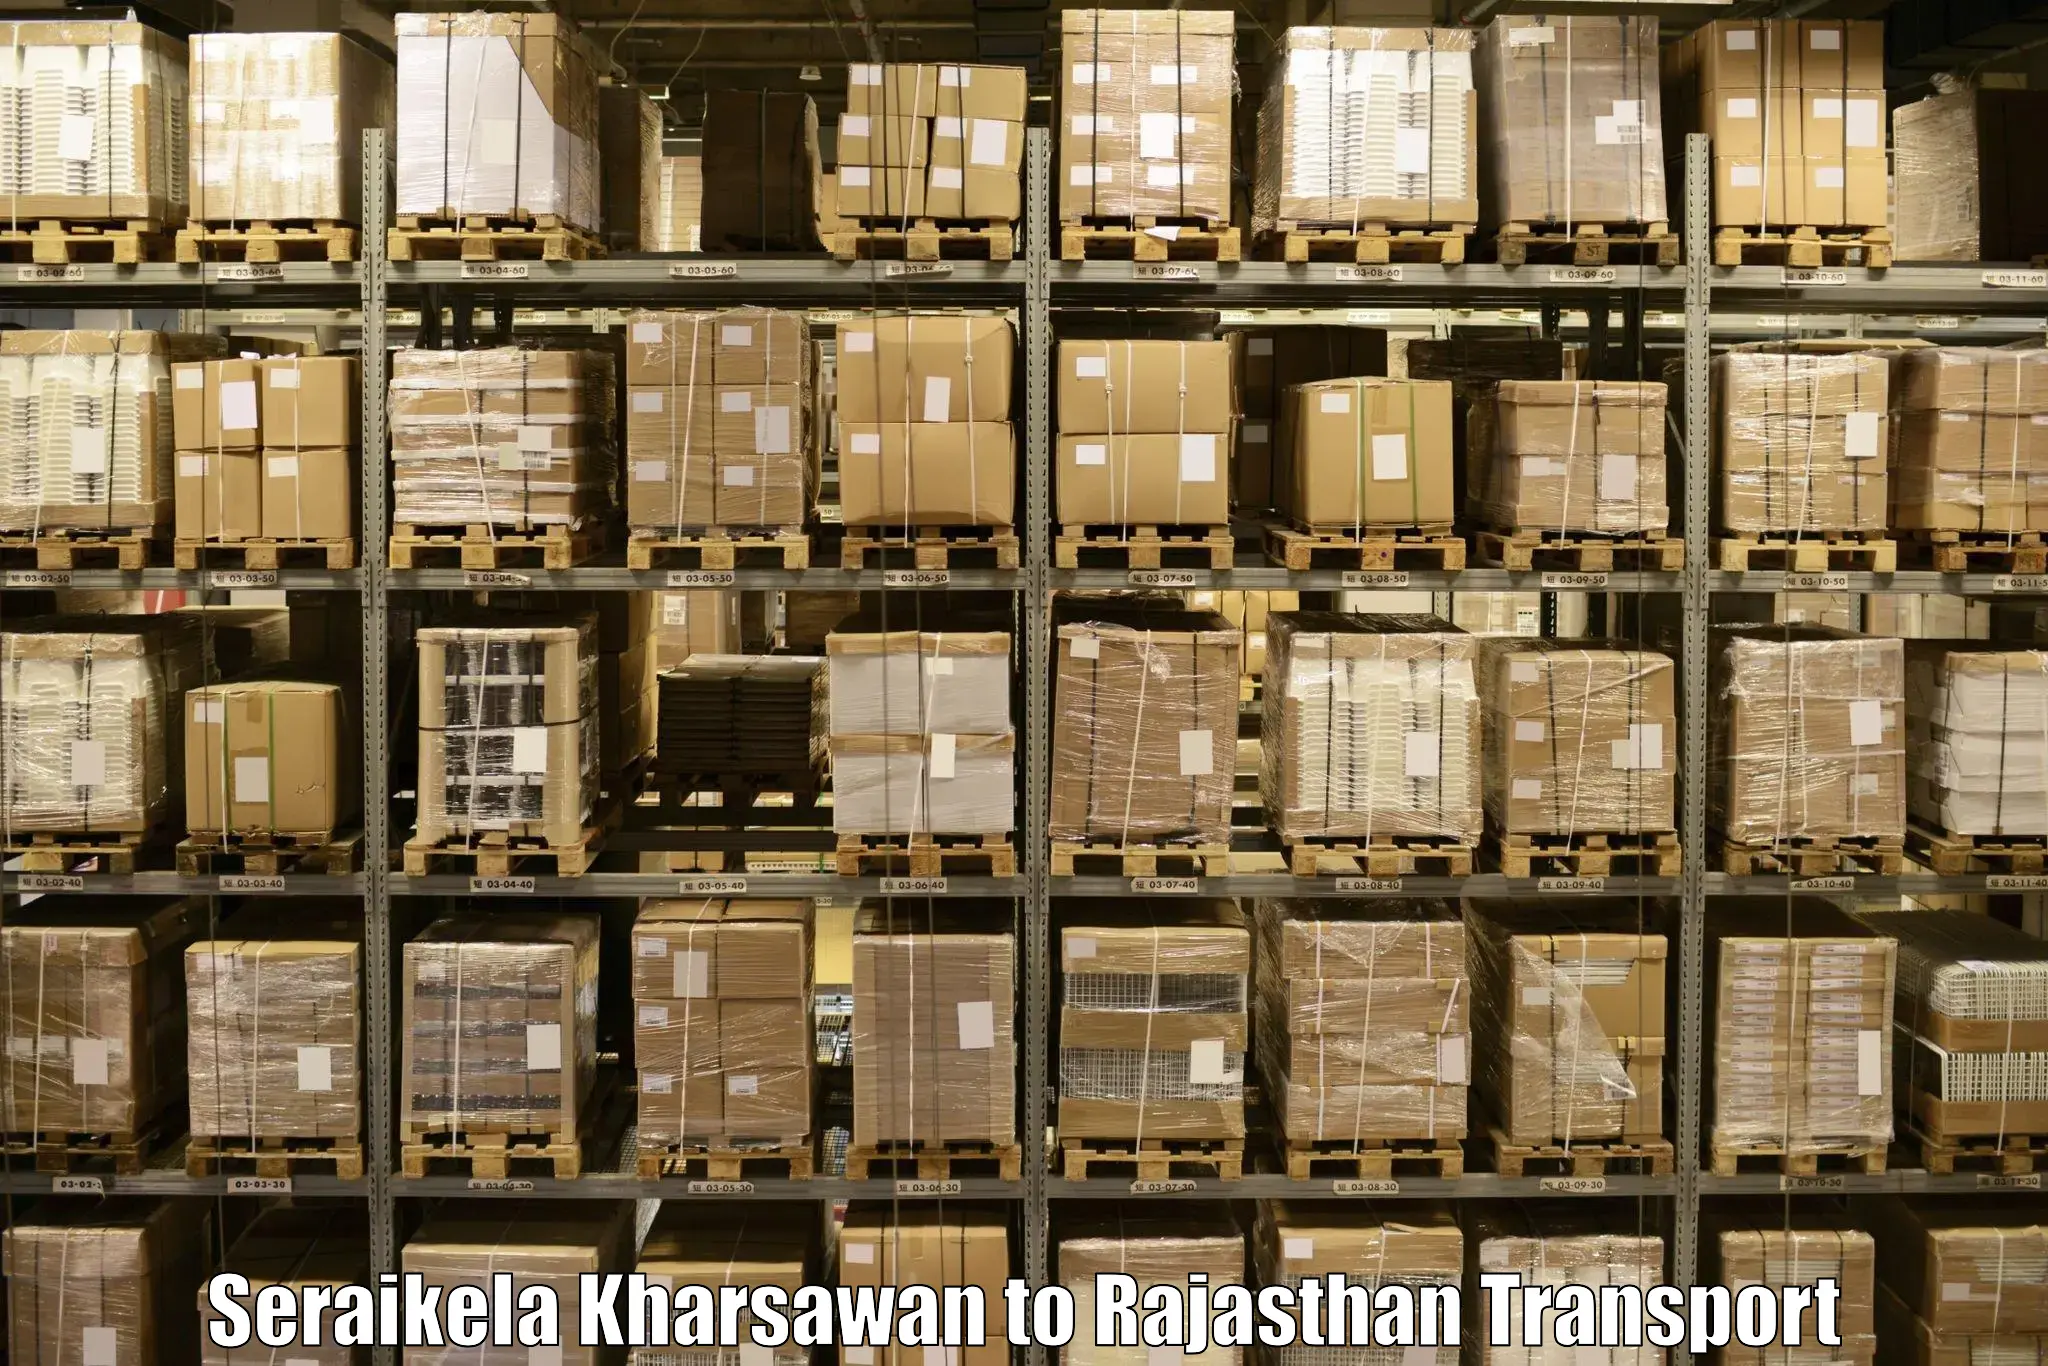 Air freight transport services Seraikela Kharsawan to Rajasthan